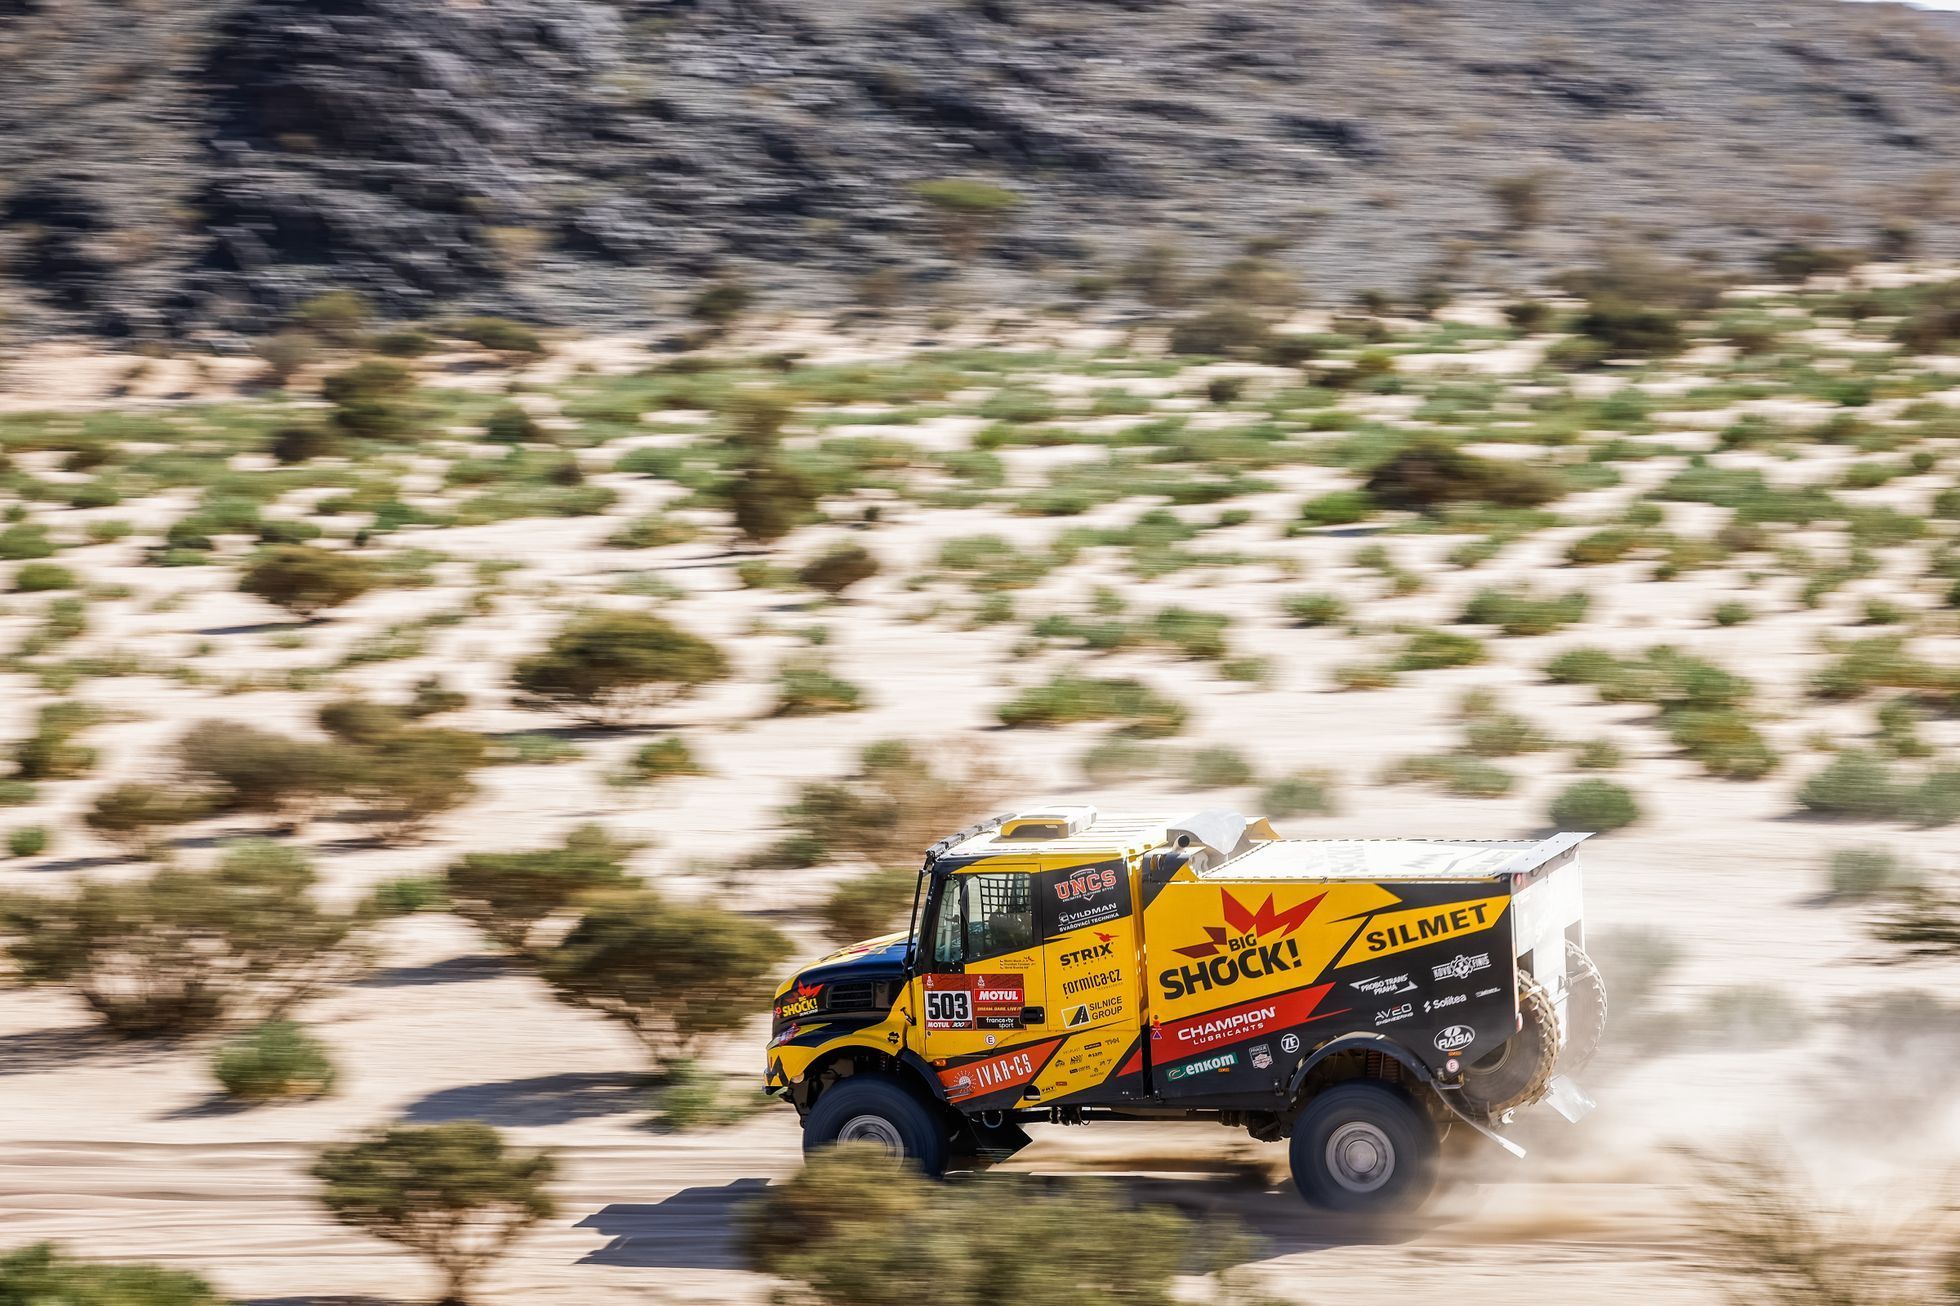 Martin Macík mladší (Iveco) v 1. etapě Rallye Dakar 2021